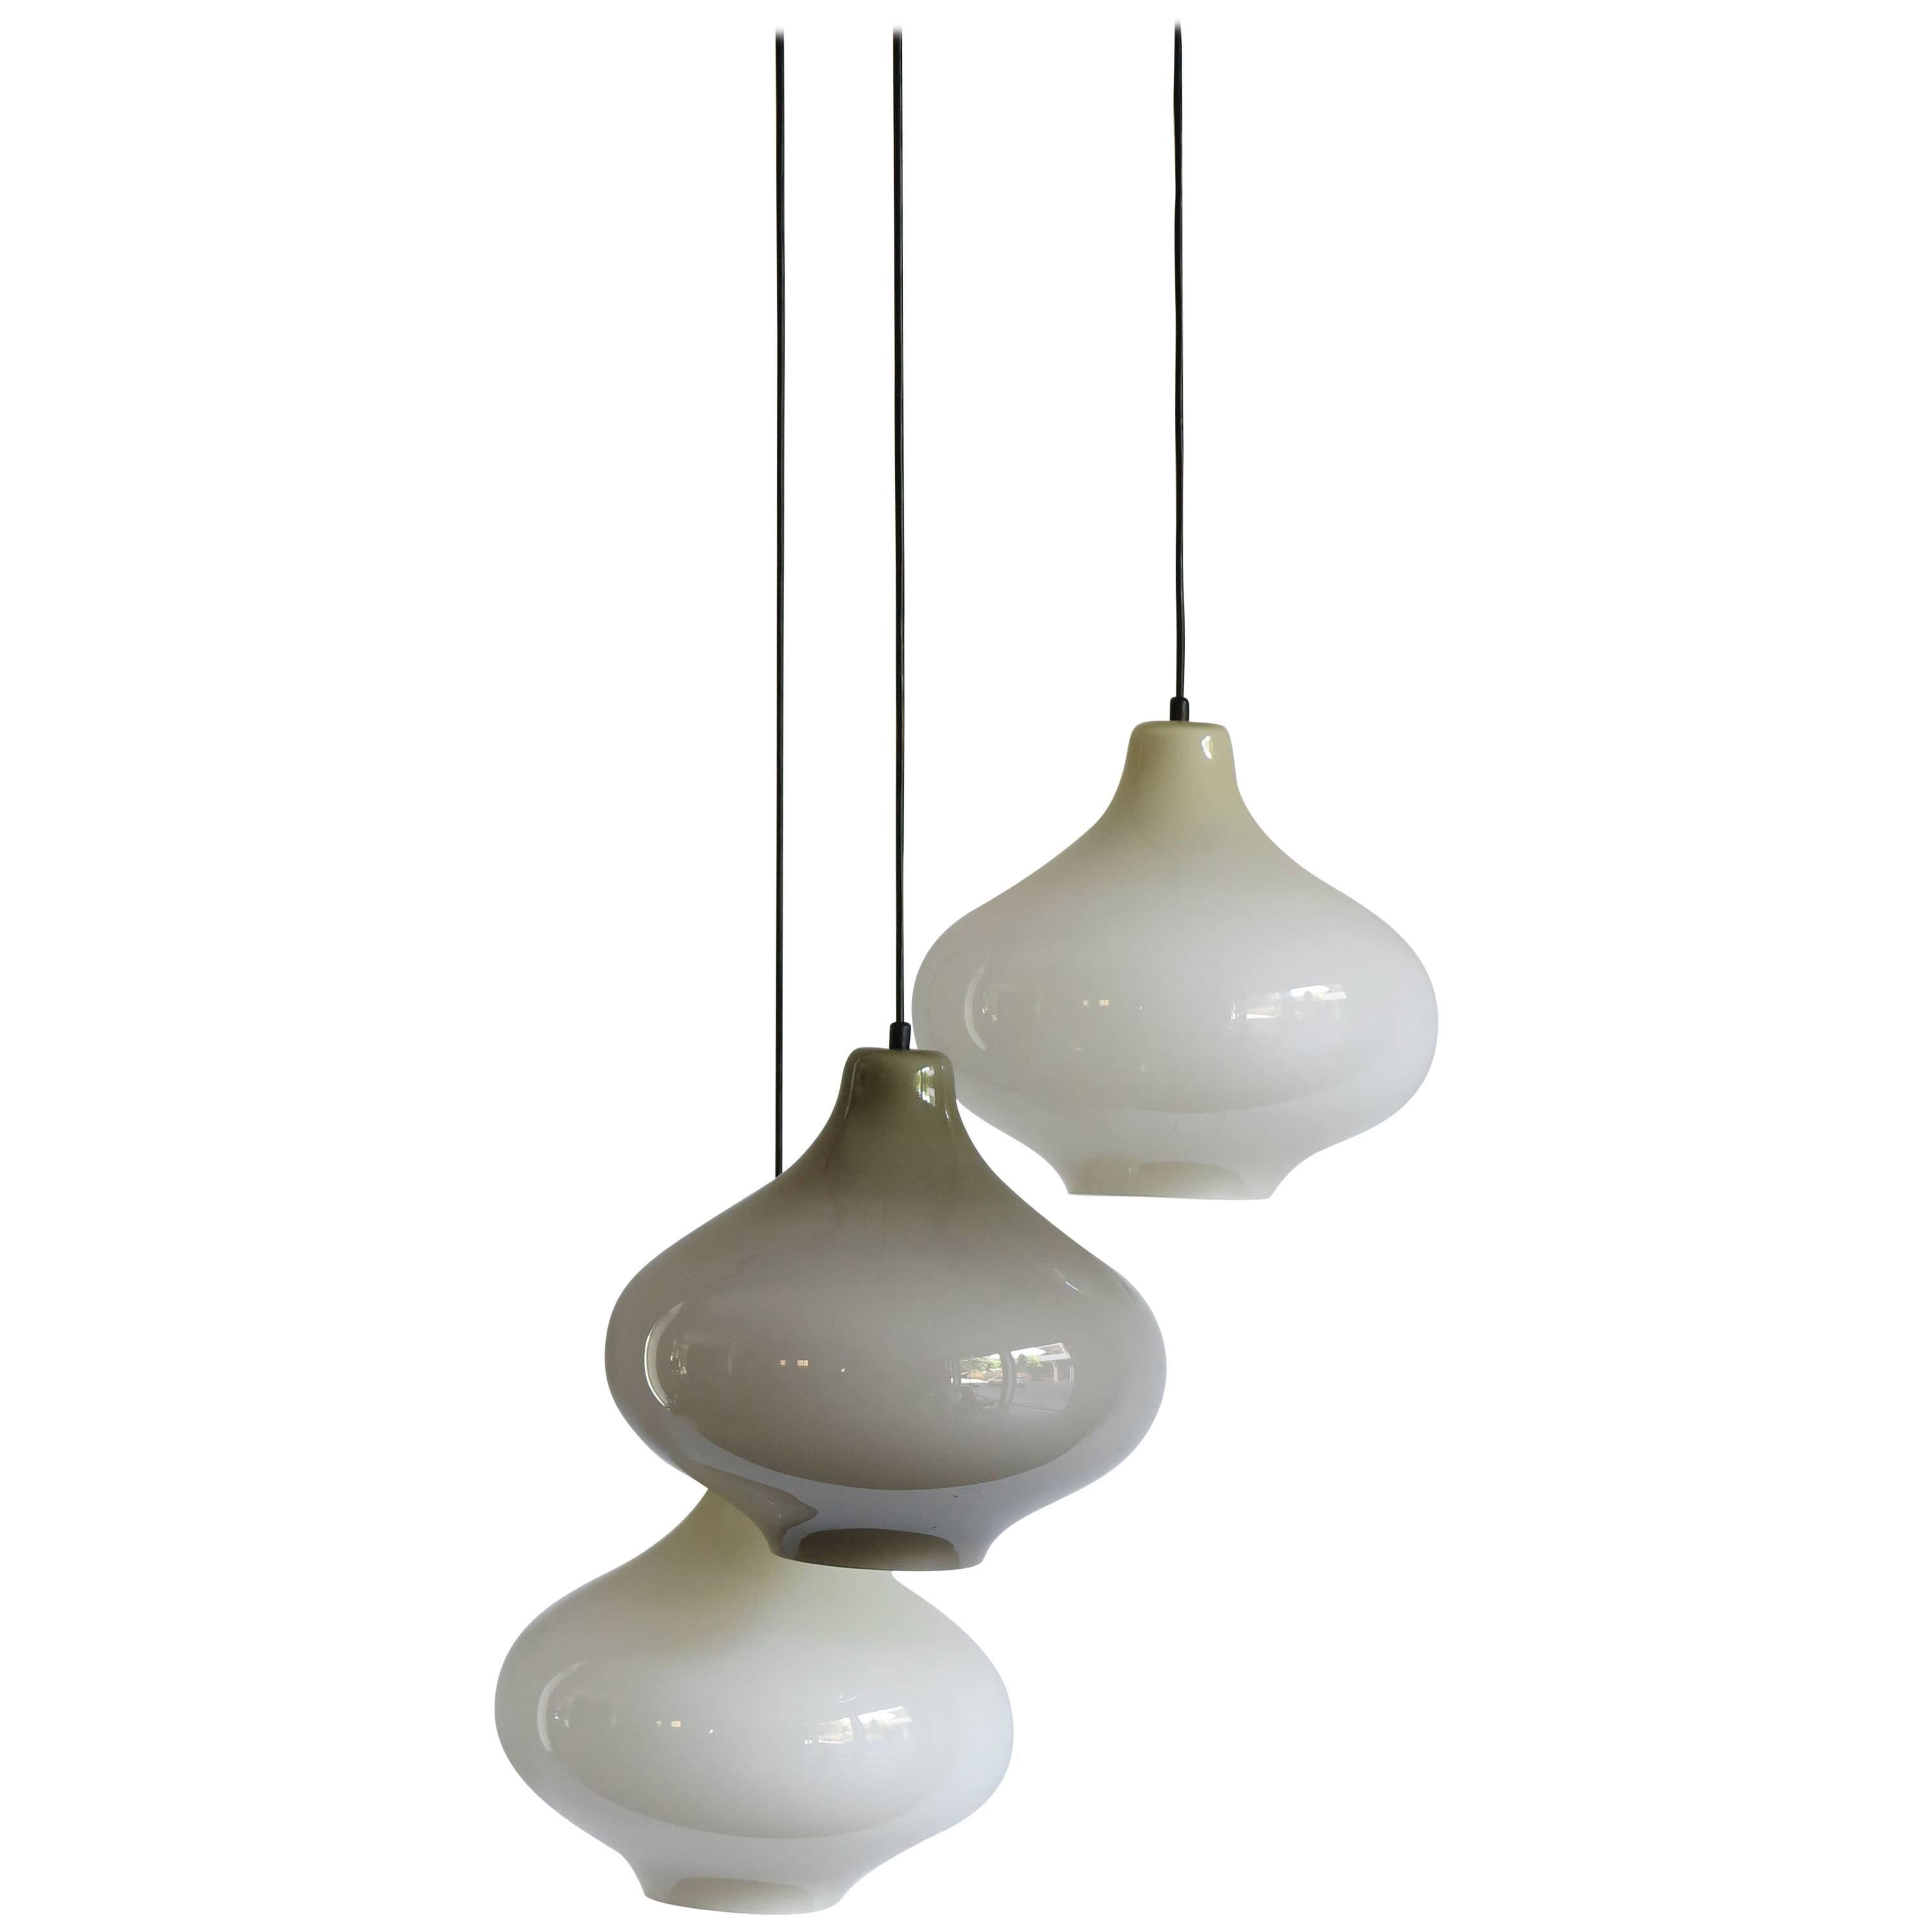 1960s Massimo Vignelli Glass Mid-Century Modern Pendant Lamp for Venini